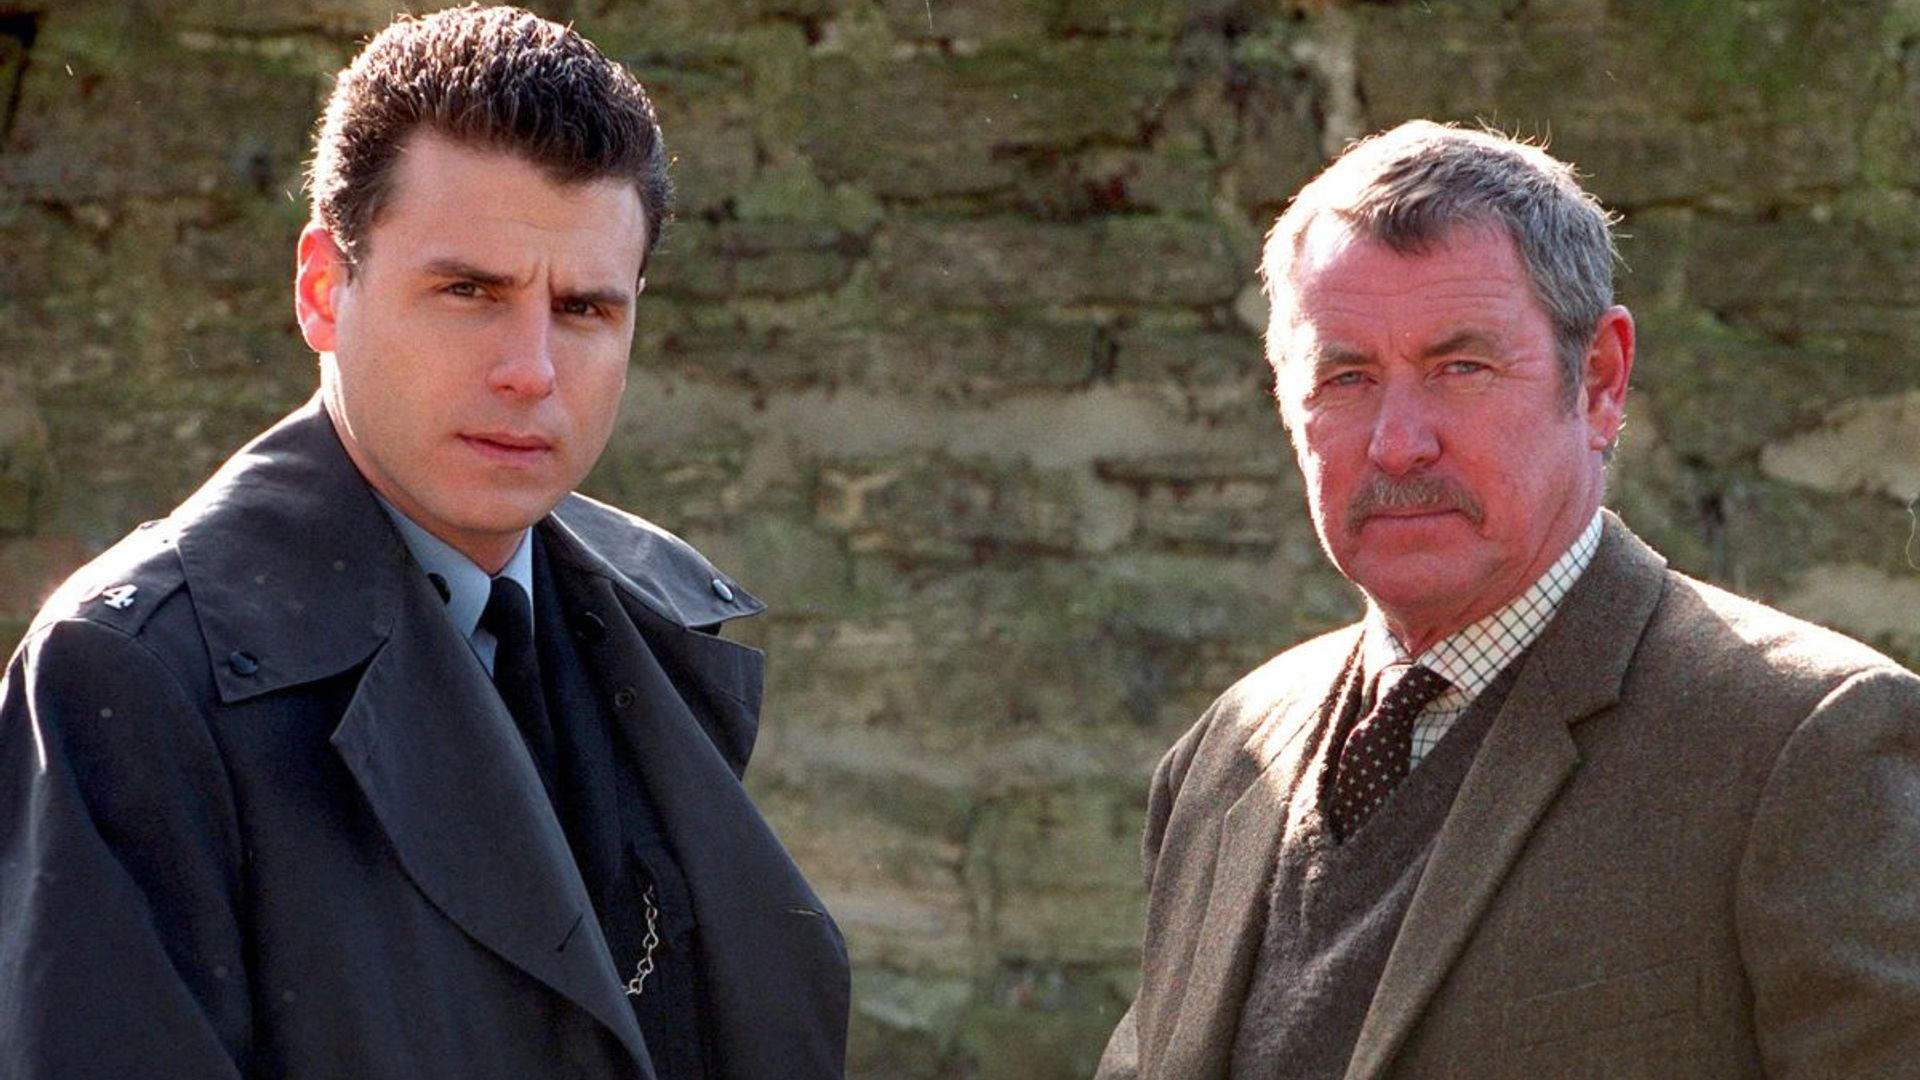 Did you spot Midsomer Murders star John Nettles in Heartbeat?